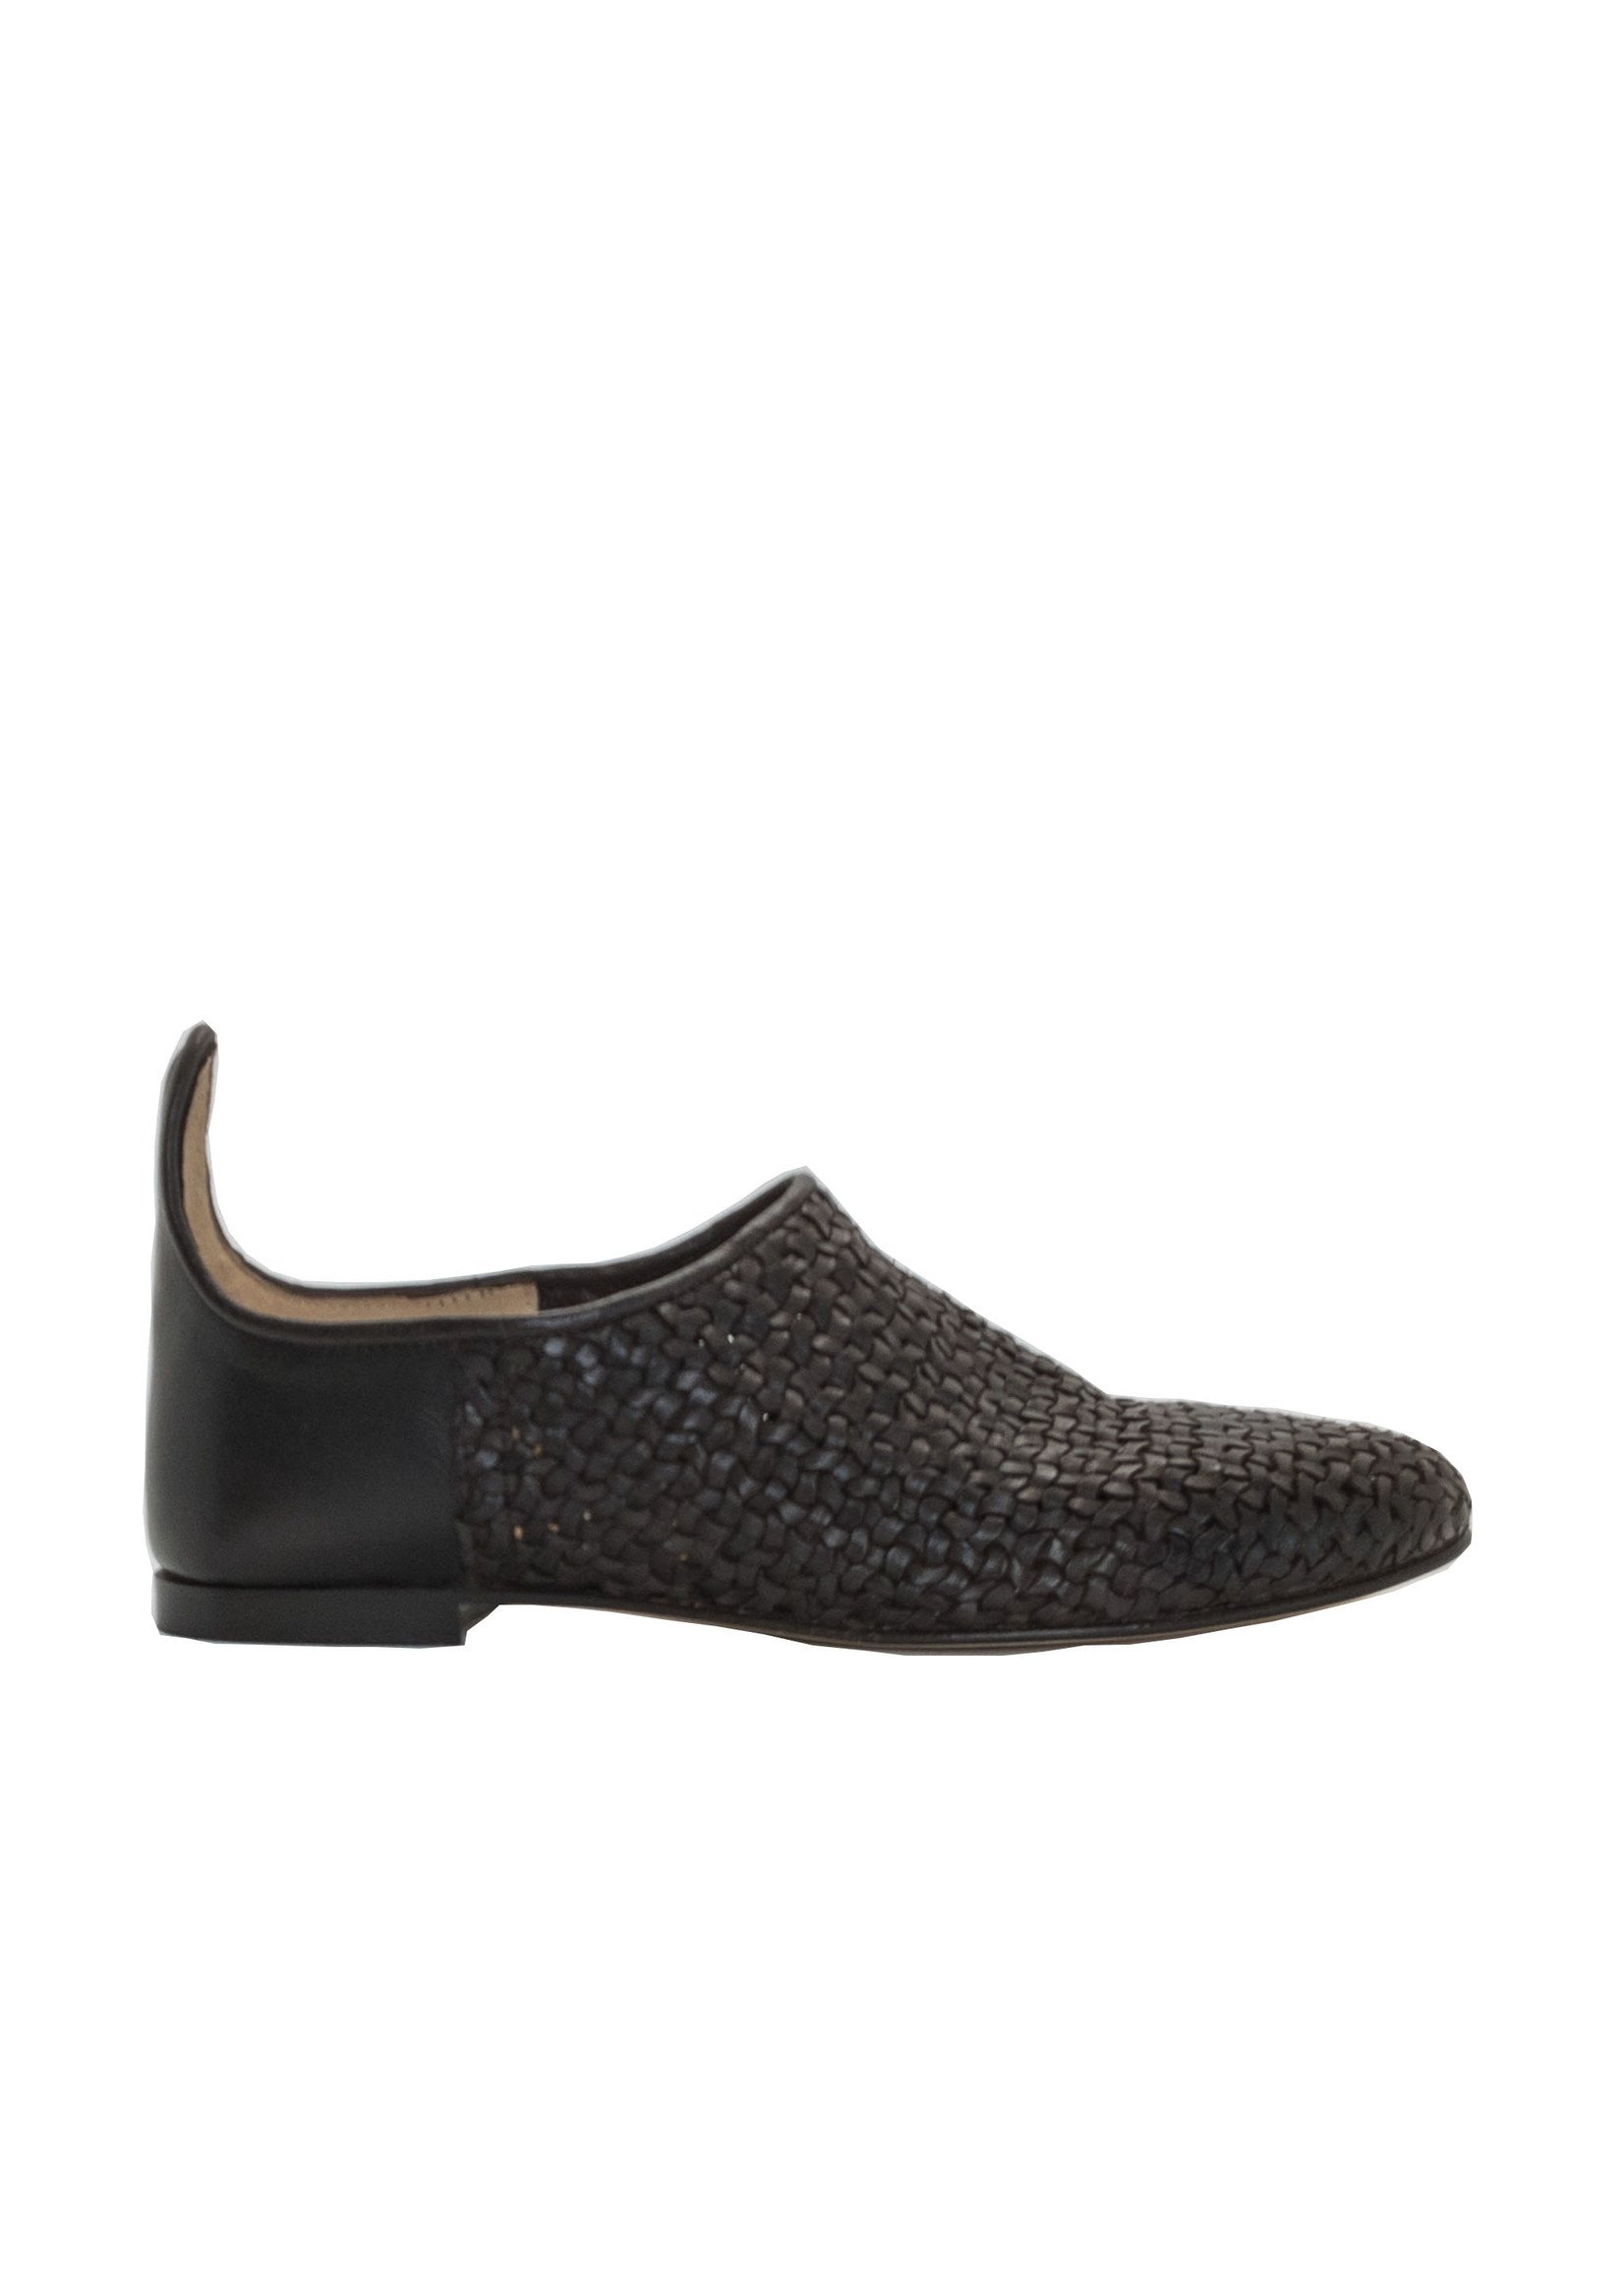 DUSAN Souk | Woven Leather Shoe